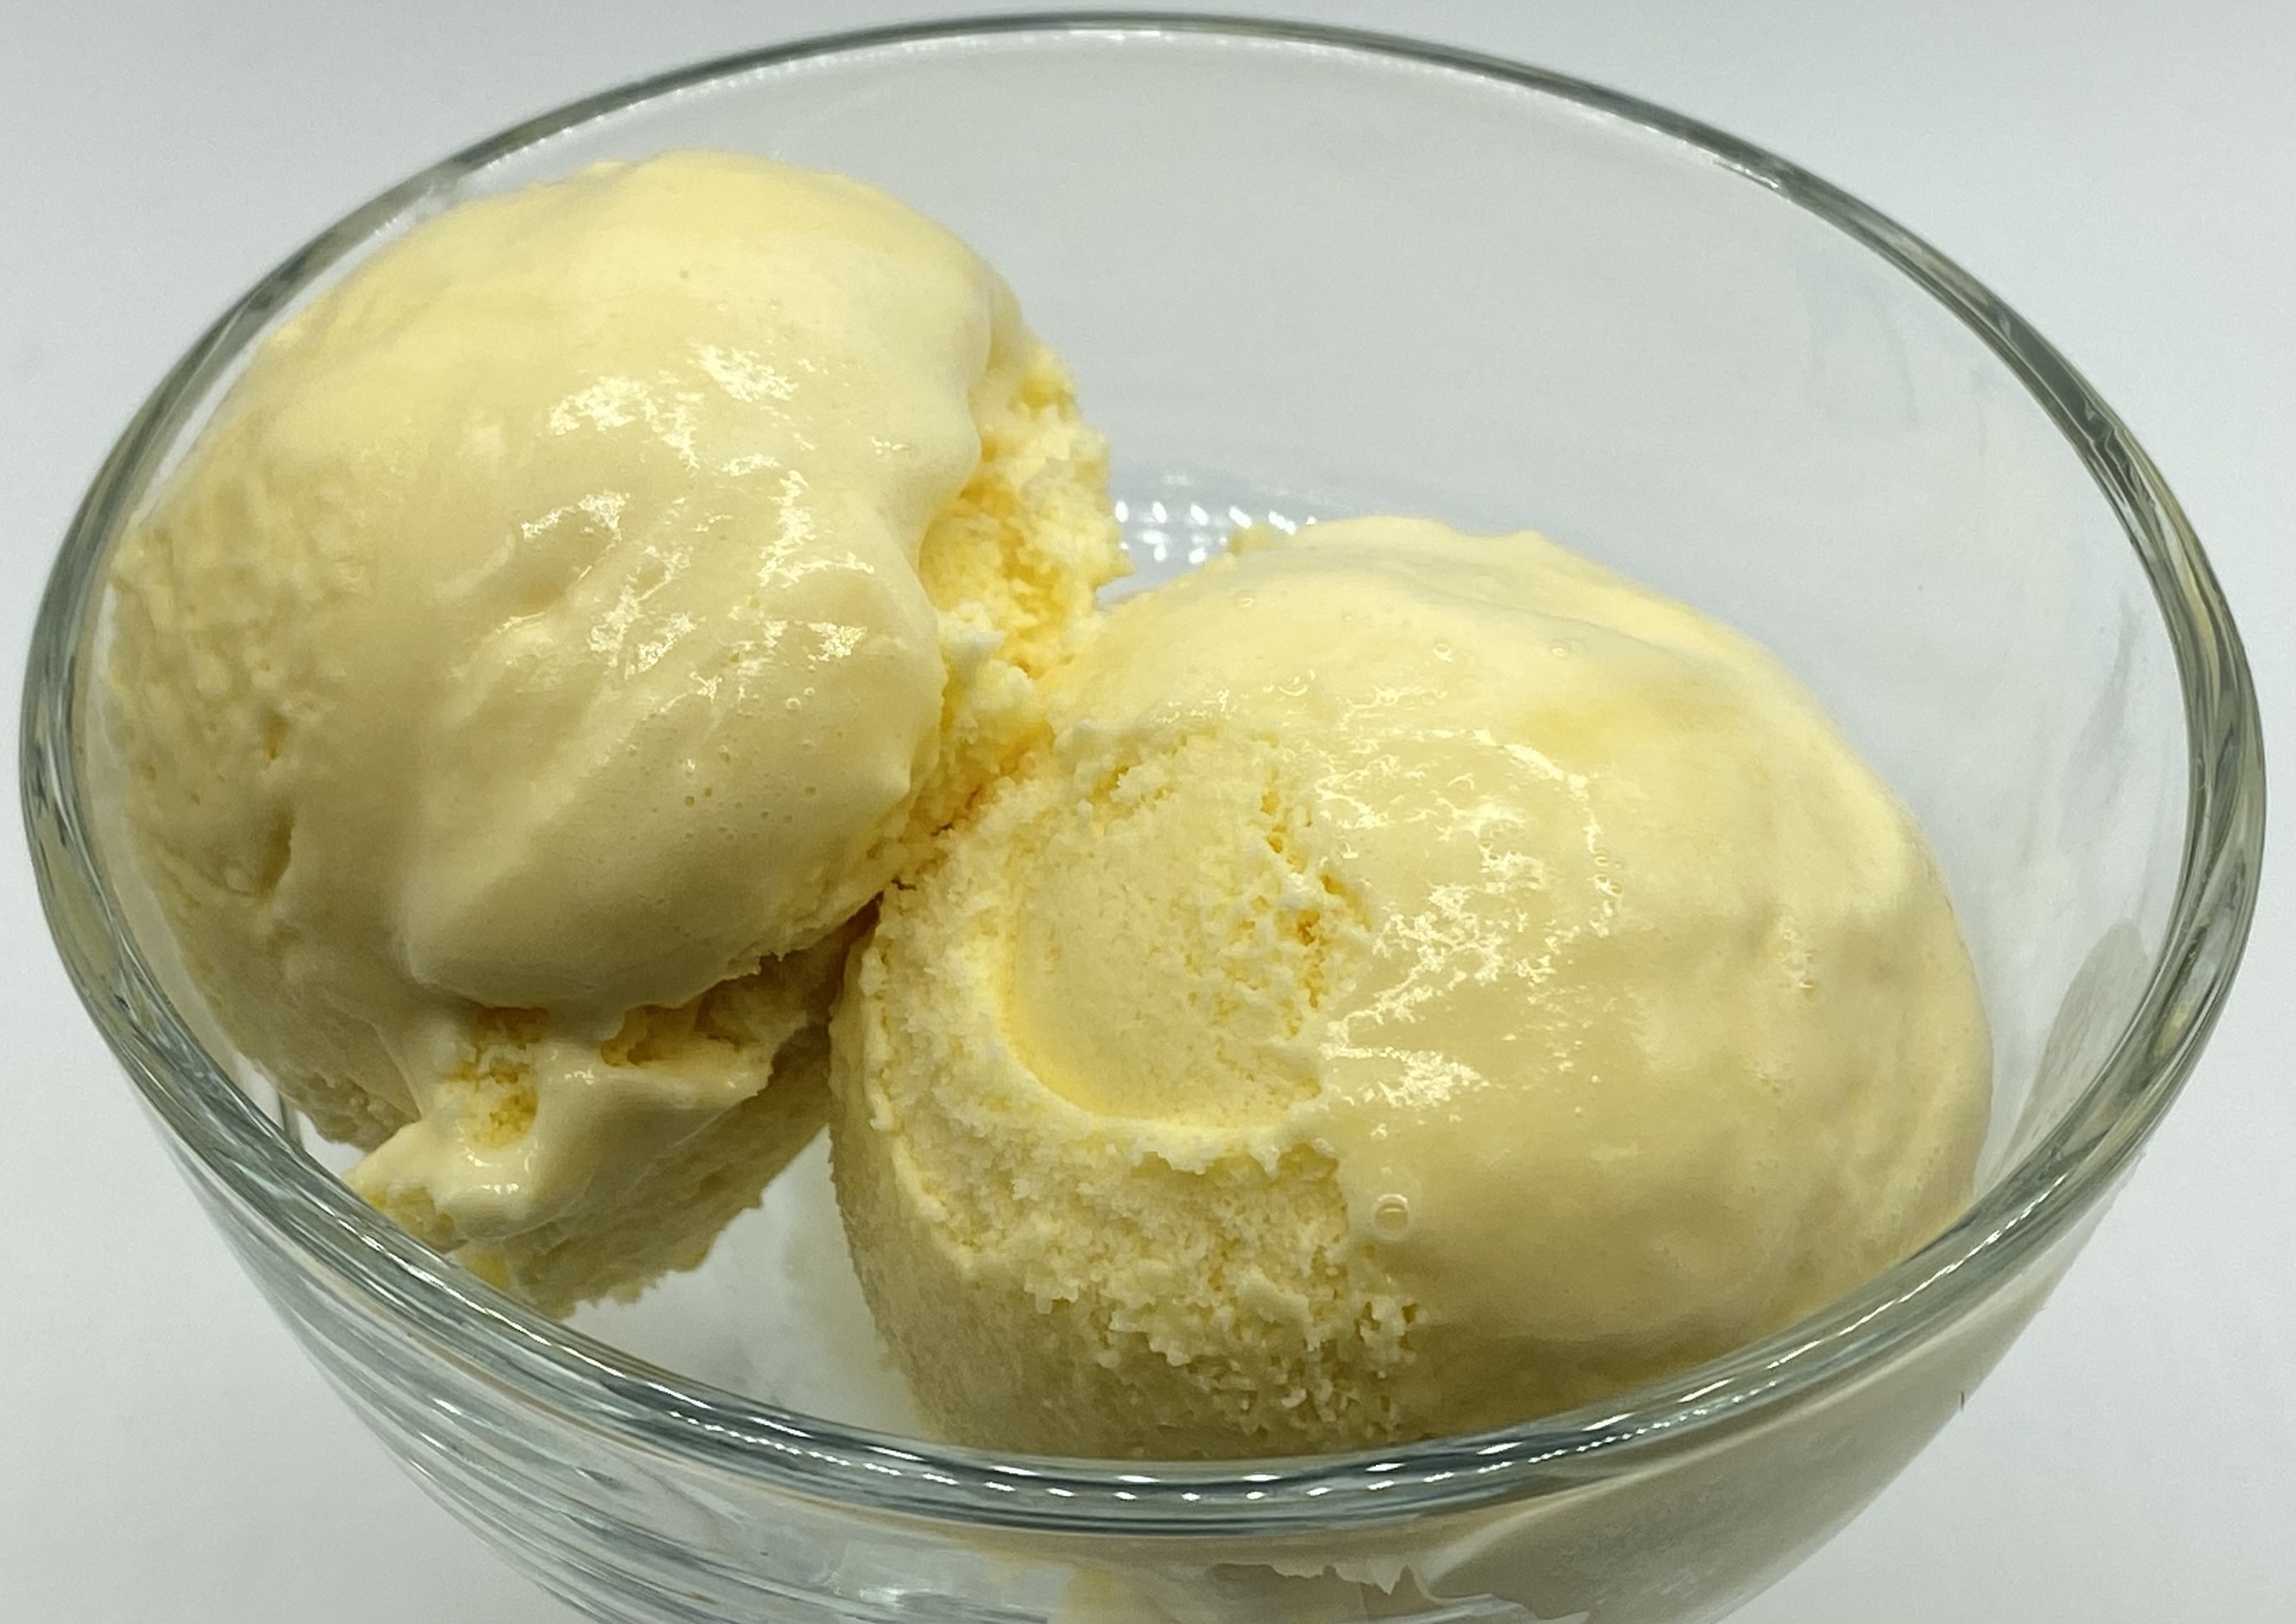 Mixed carotene emulsion yellow ice cream